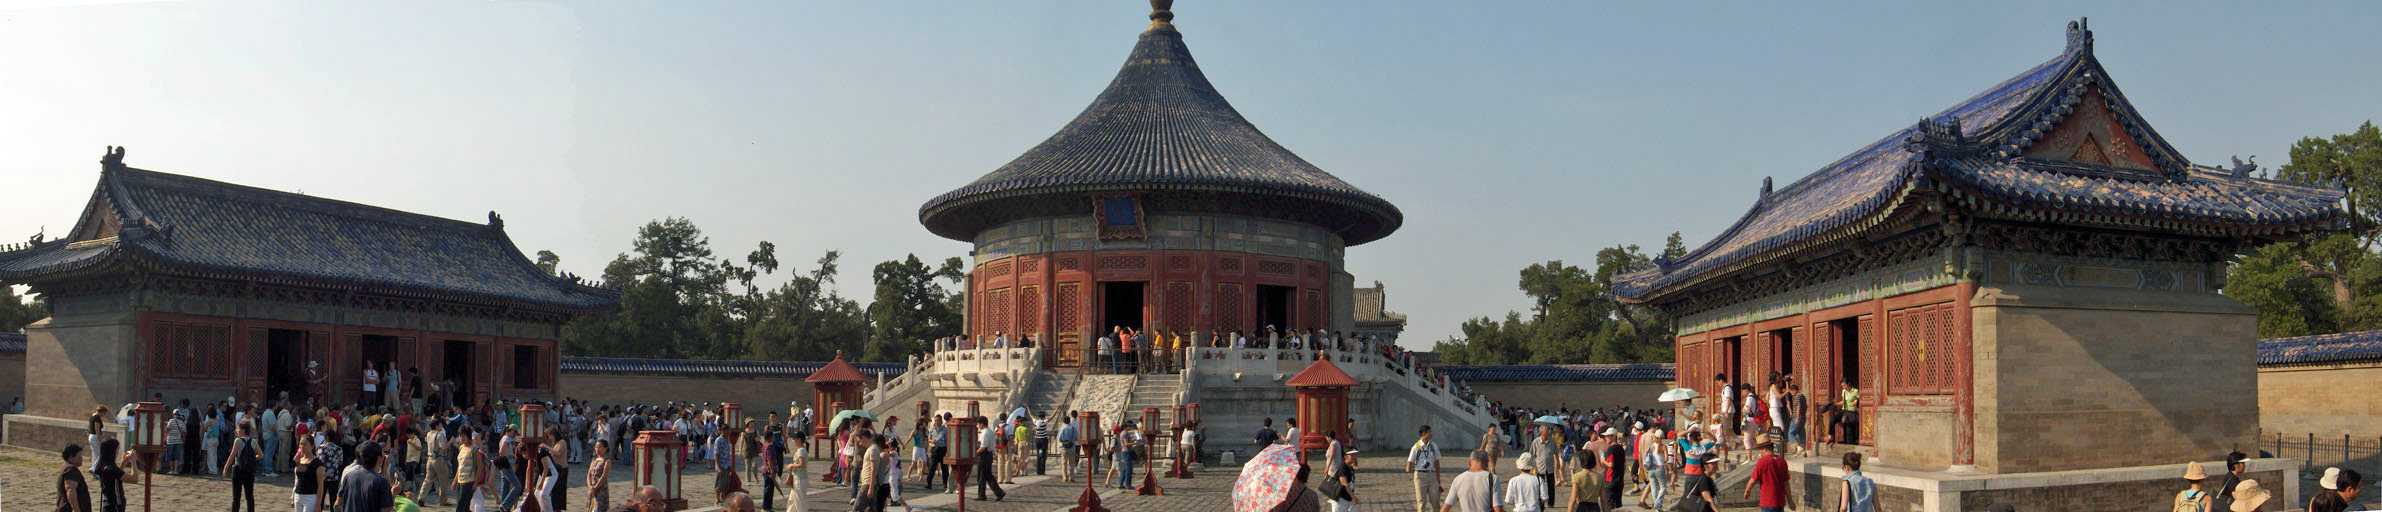 Le mur et le temple de l’Écho dans le parc du temple du Ciel (Pékin), le 21 août 2005